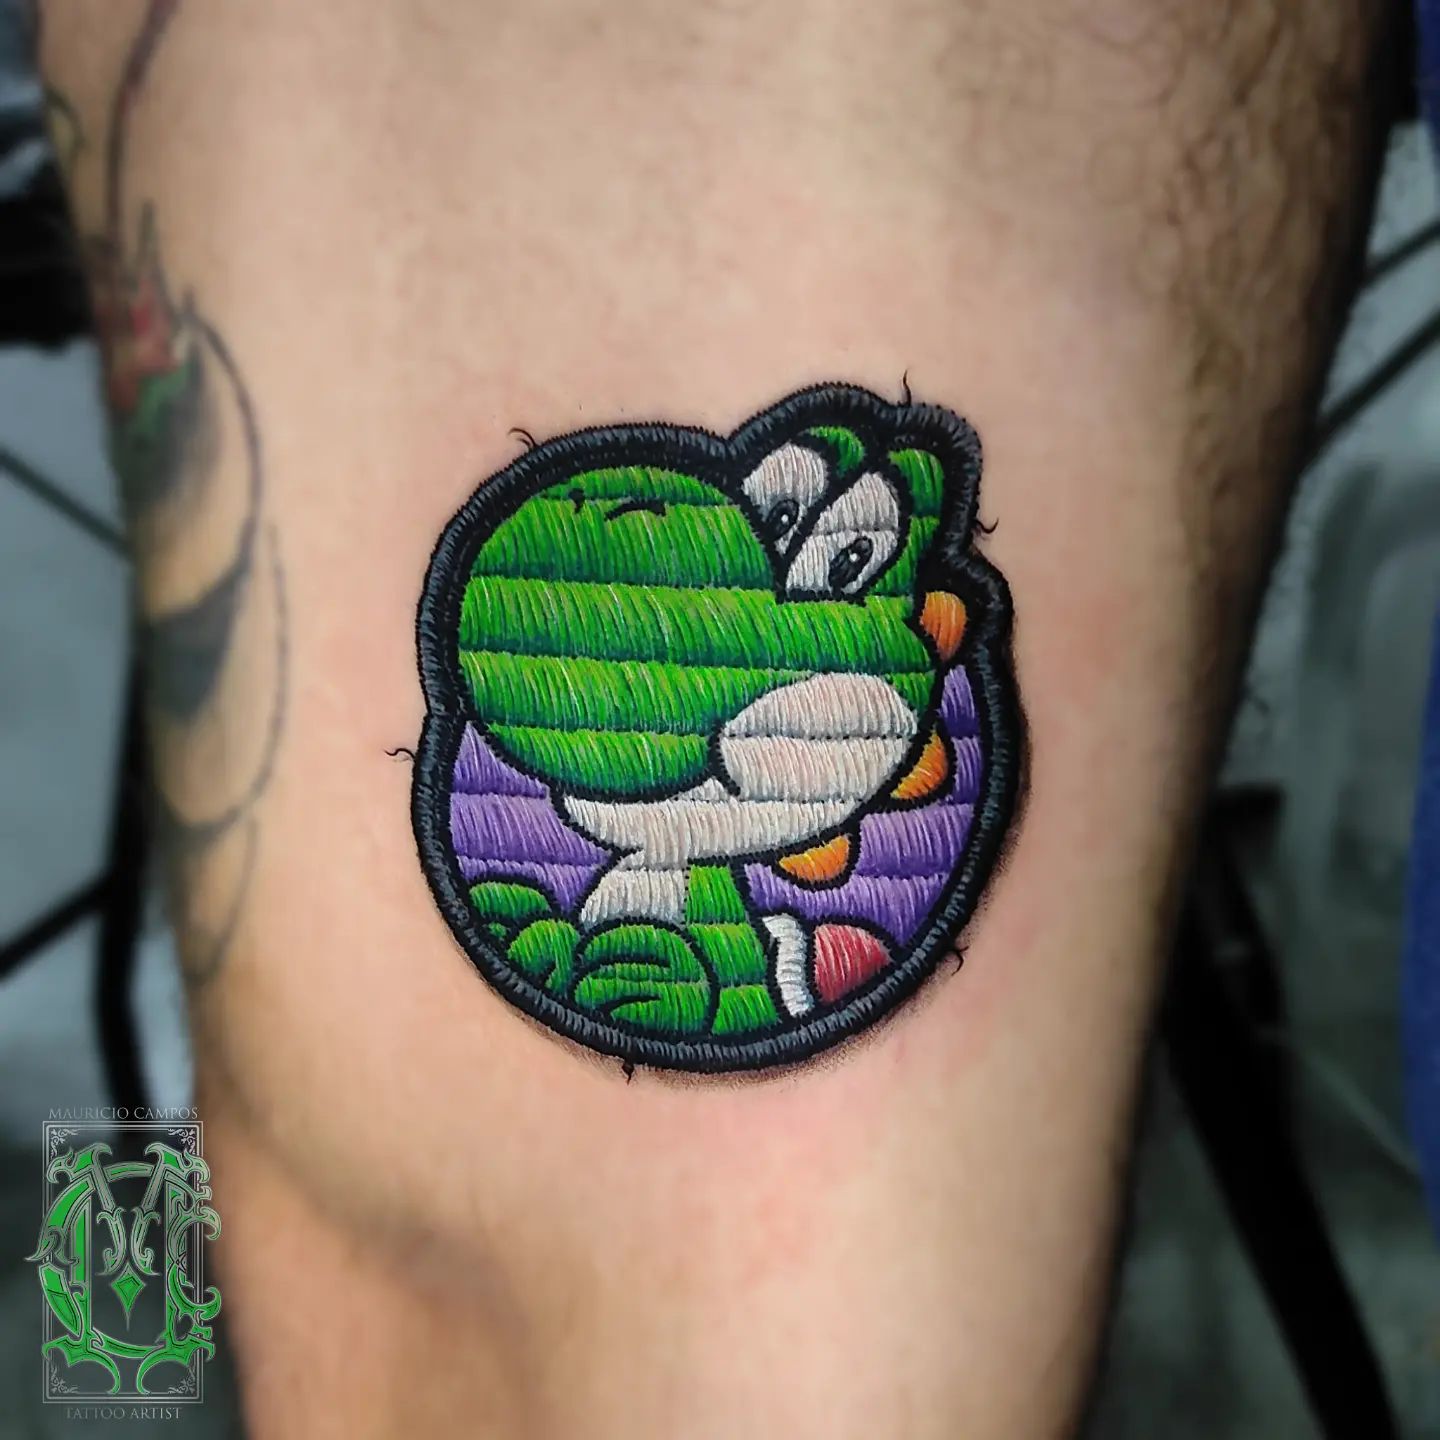 Tatuaż z małym zielonym smokiem